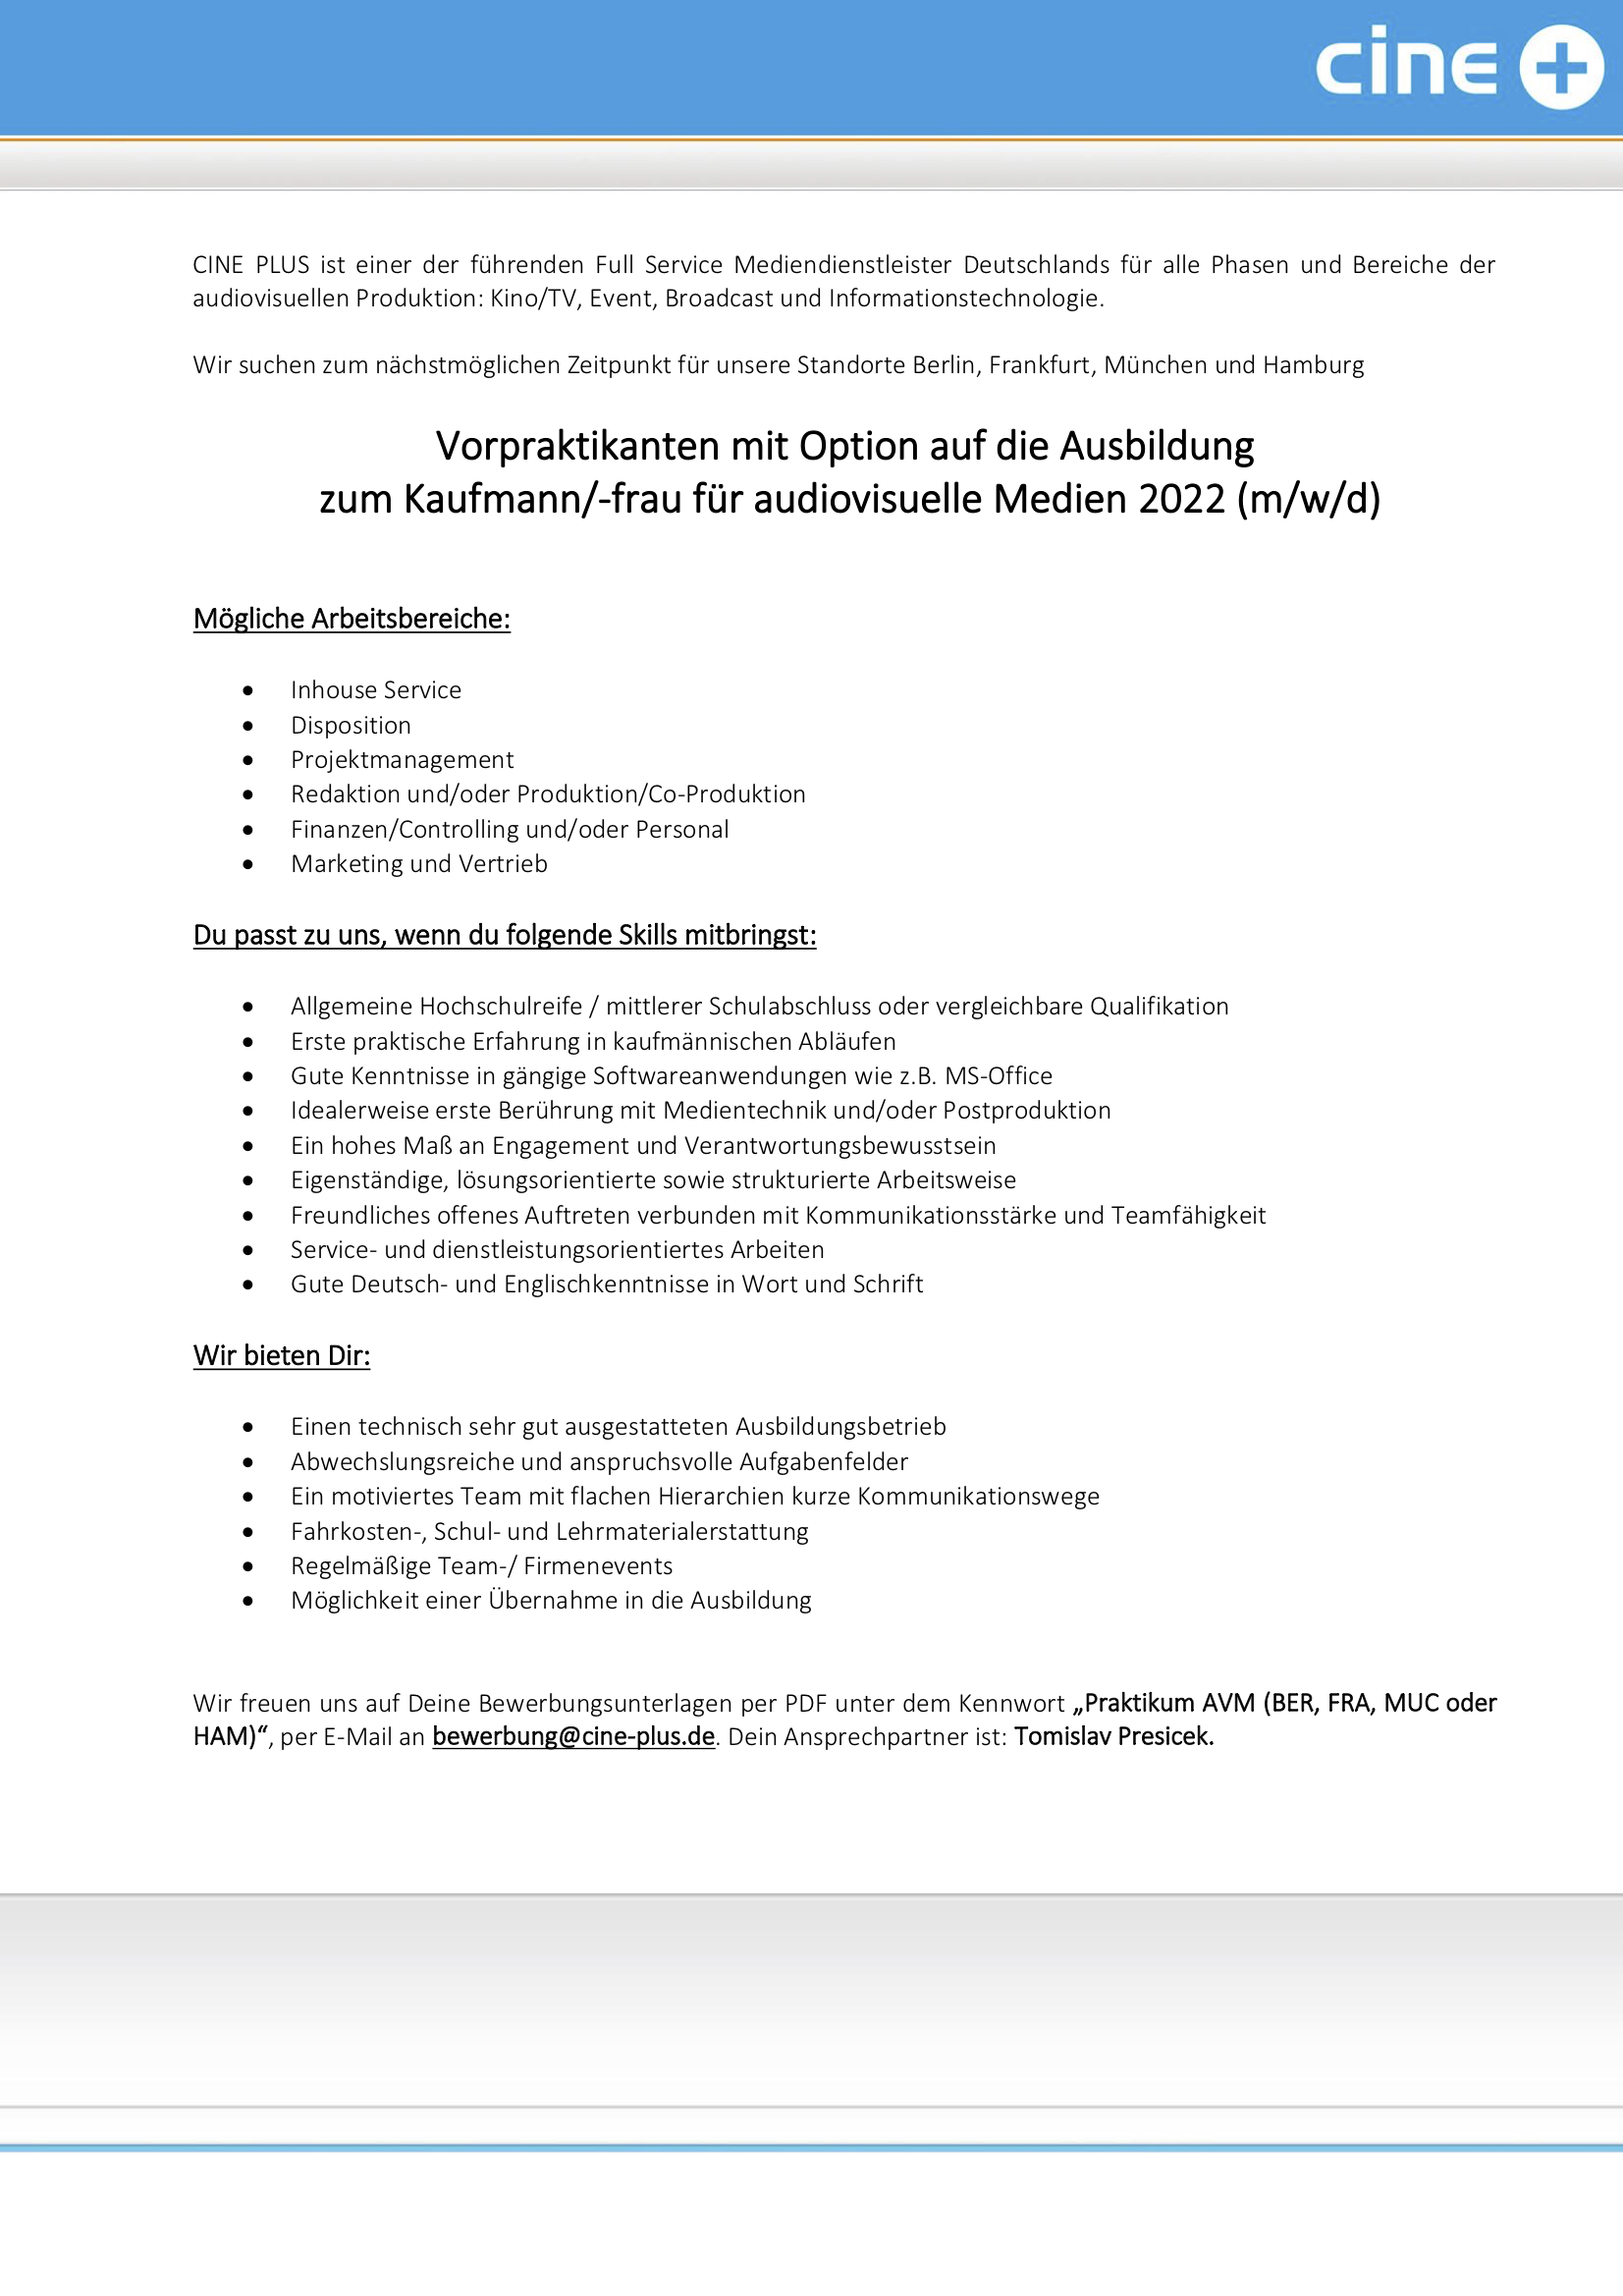 Vorpraktikanten, Opt. auf Ausb. Kaufmann/-frau für audiovisuelle Medien (m/w/d)